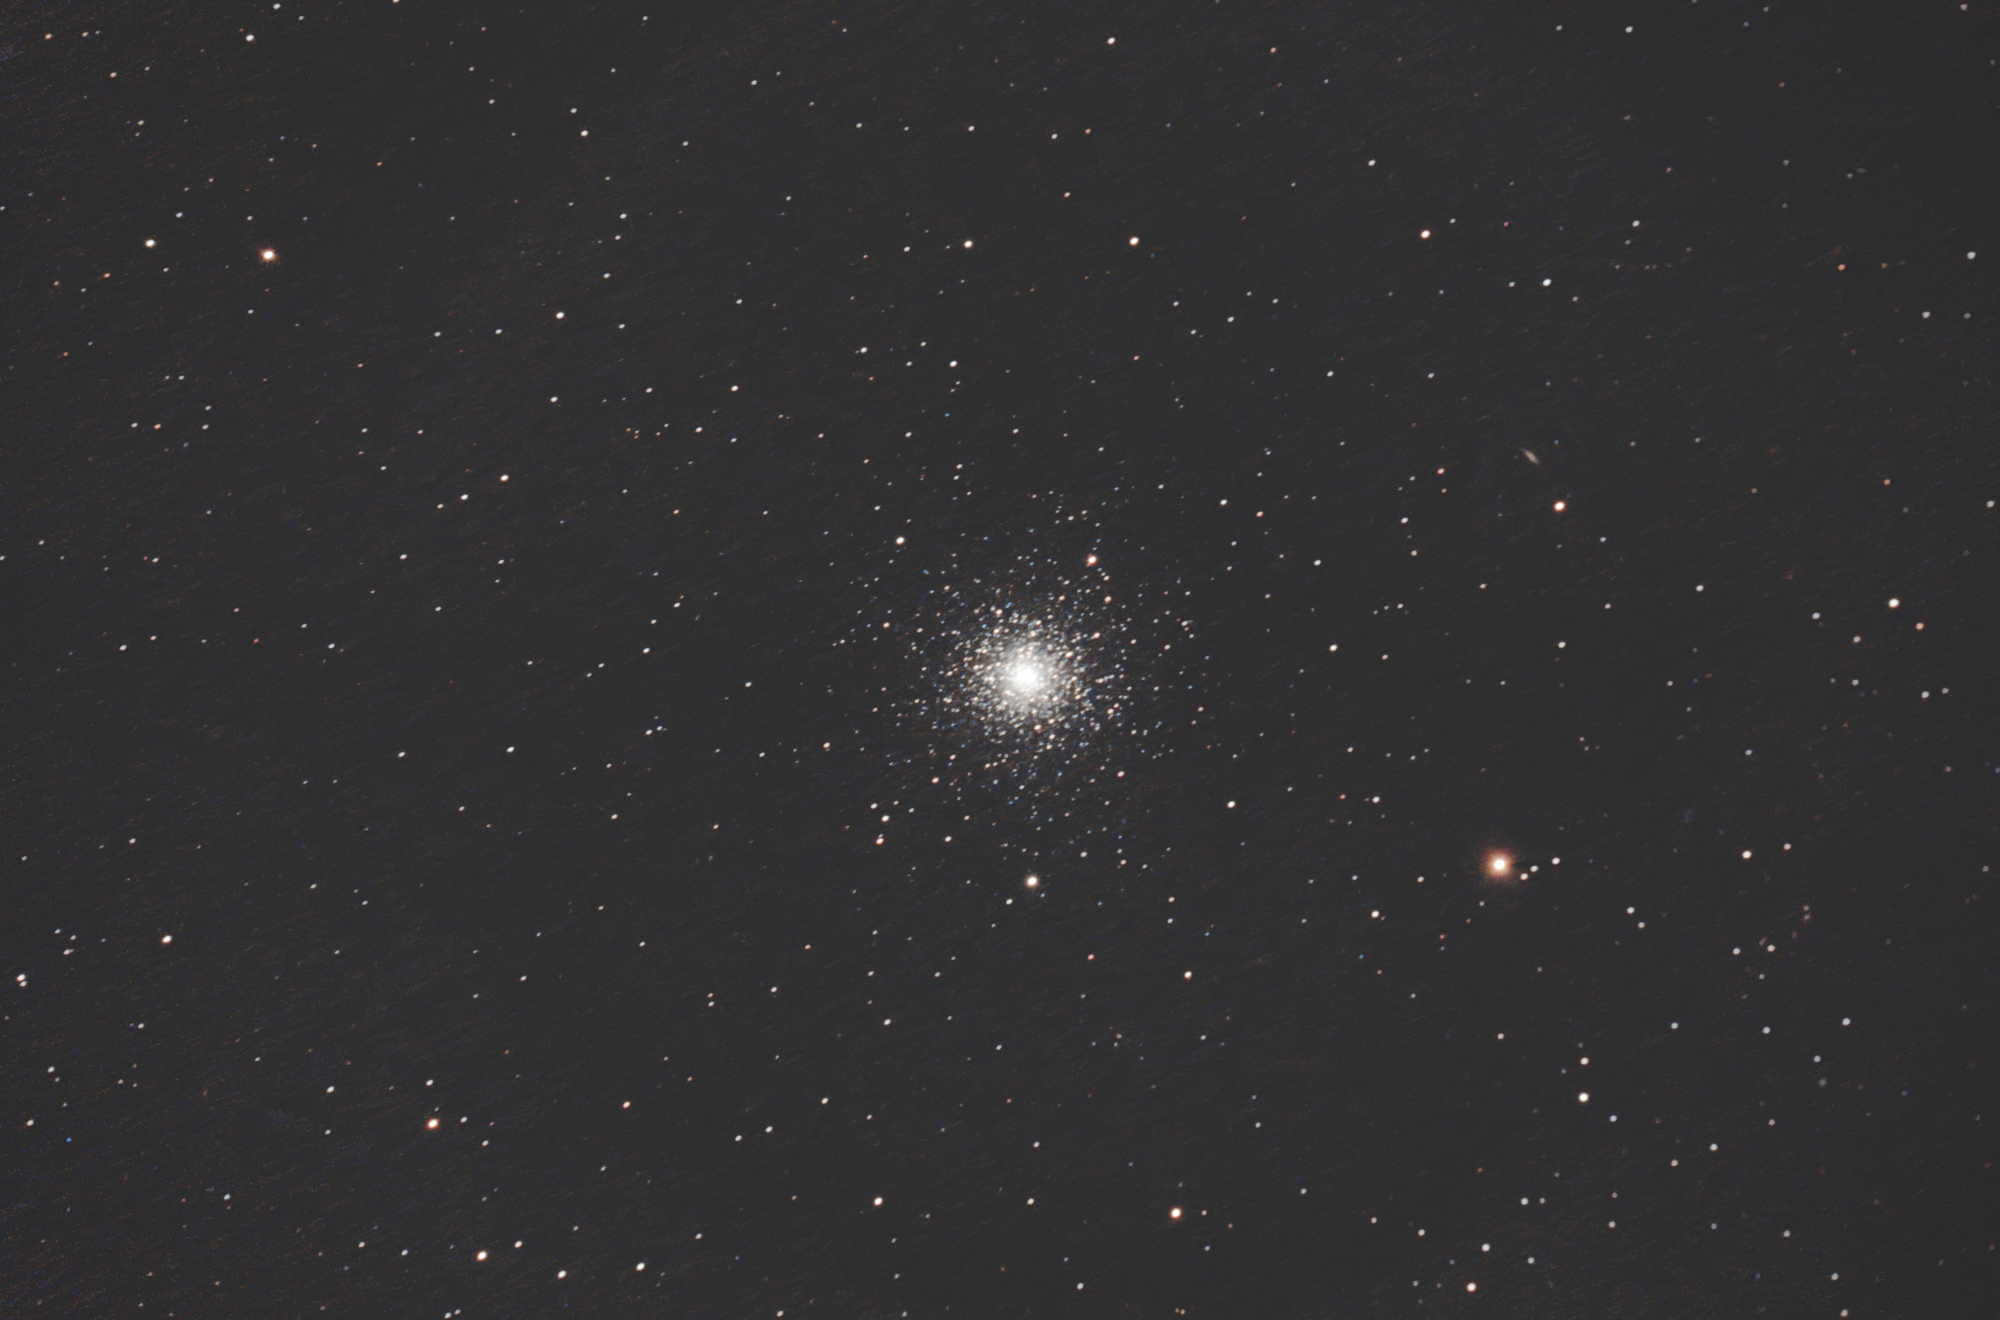 Messier 3.jpg